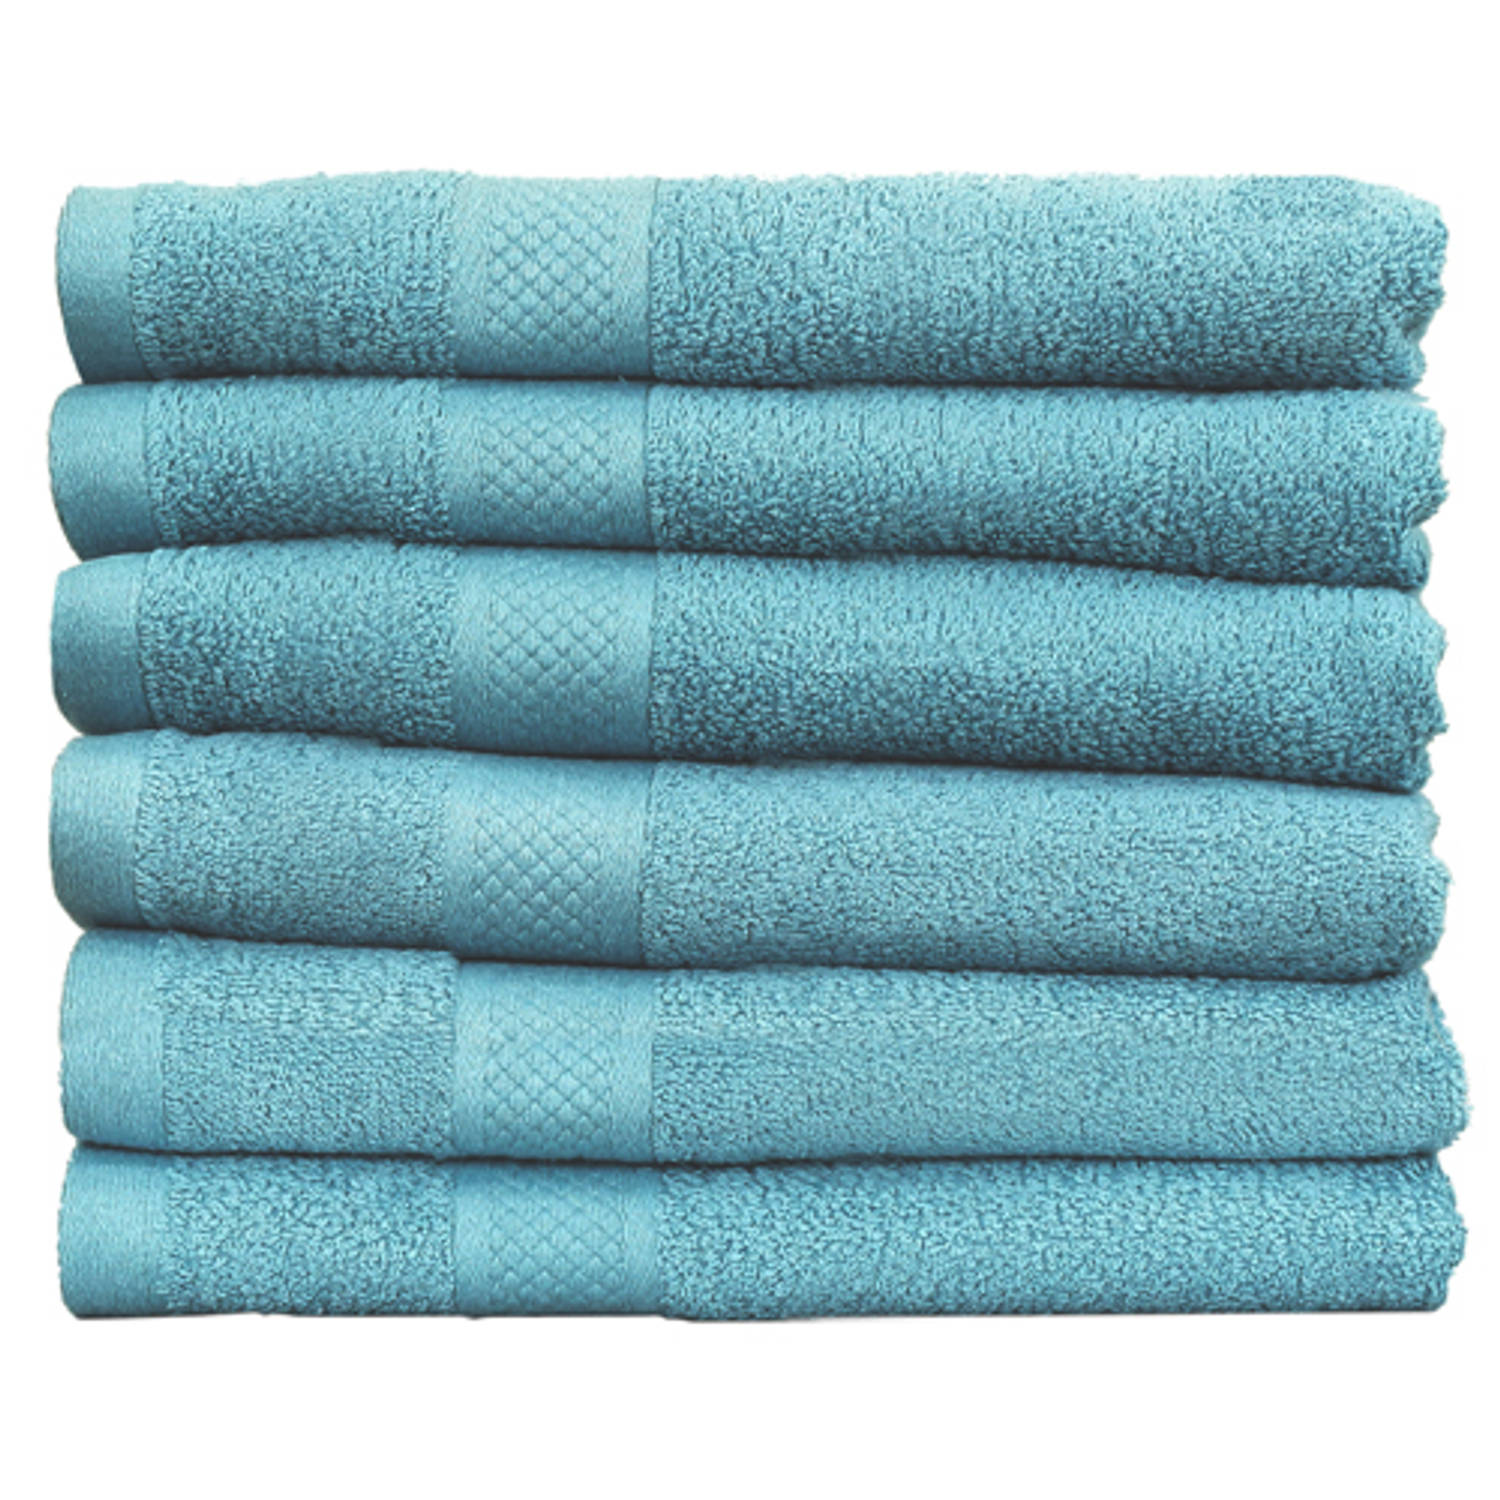 Katoenen Handdoeken Denim Blauw – Set van 6 Stuks – 70 x 140 cm